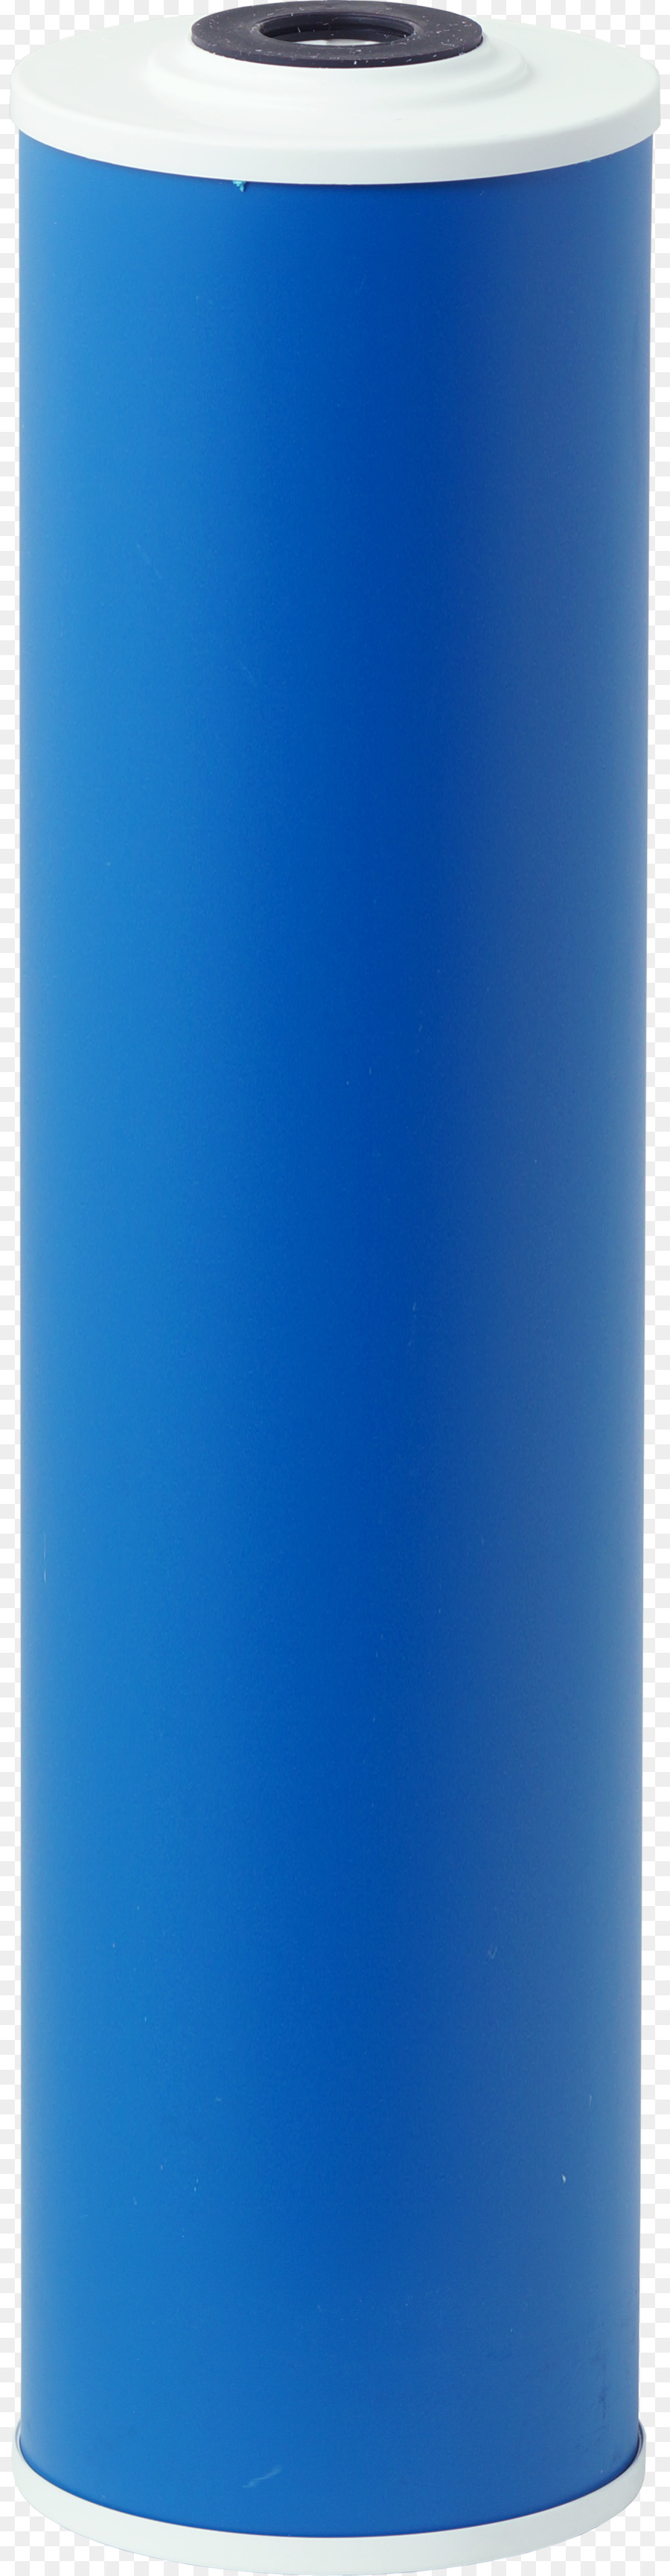 Wasser-Filter-Kobalt blau - Design